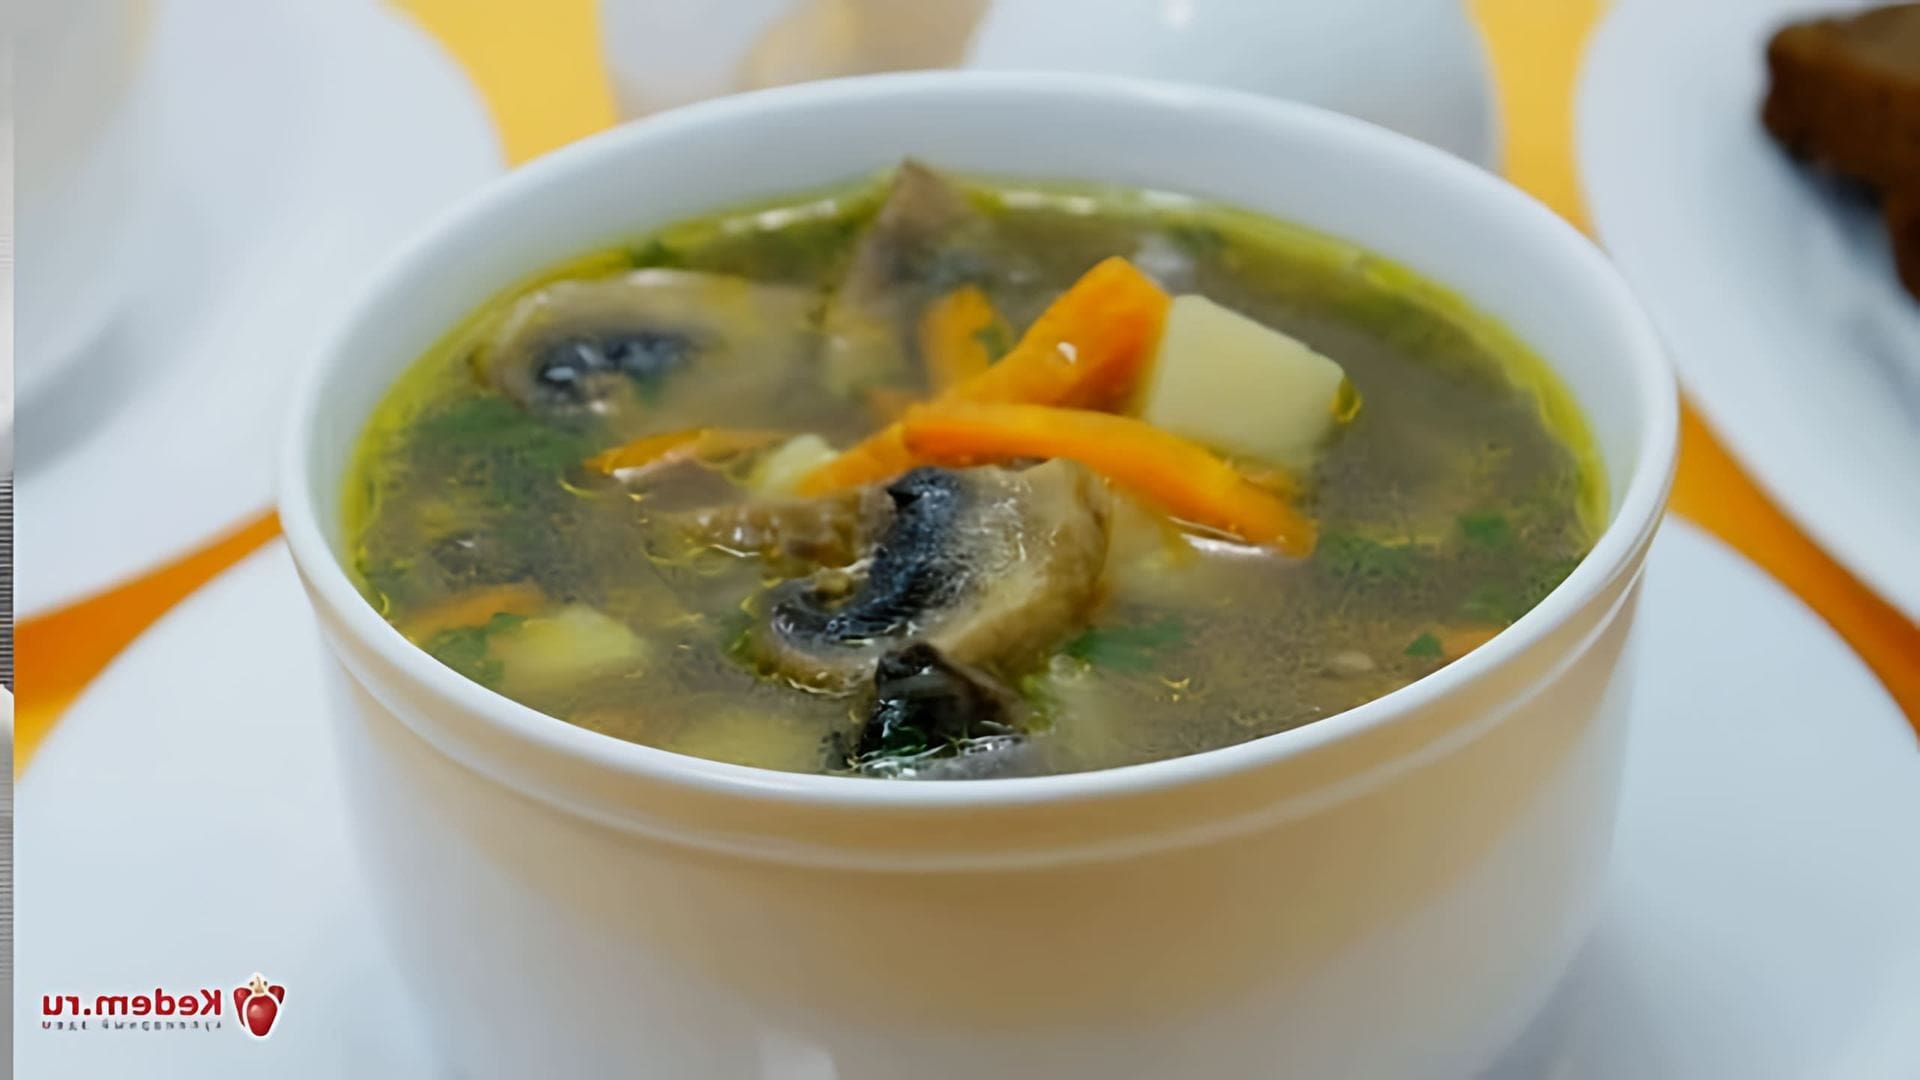 В этом видео демонстрируется процесс приготовления грибного супа из шампиньонов